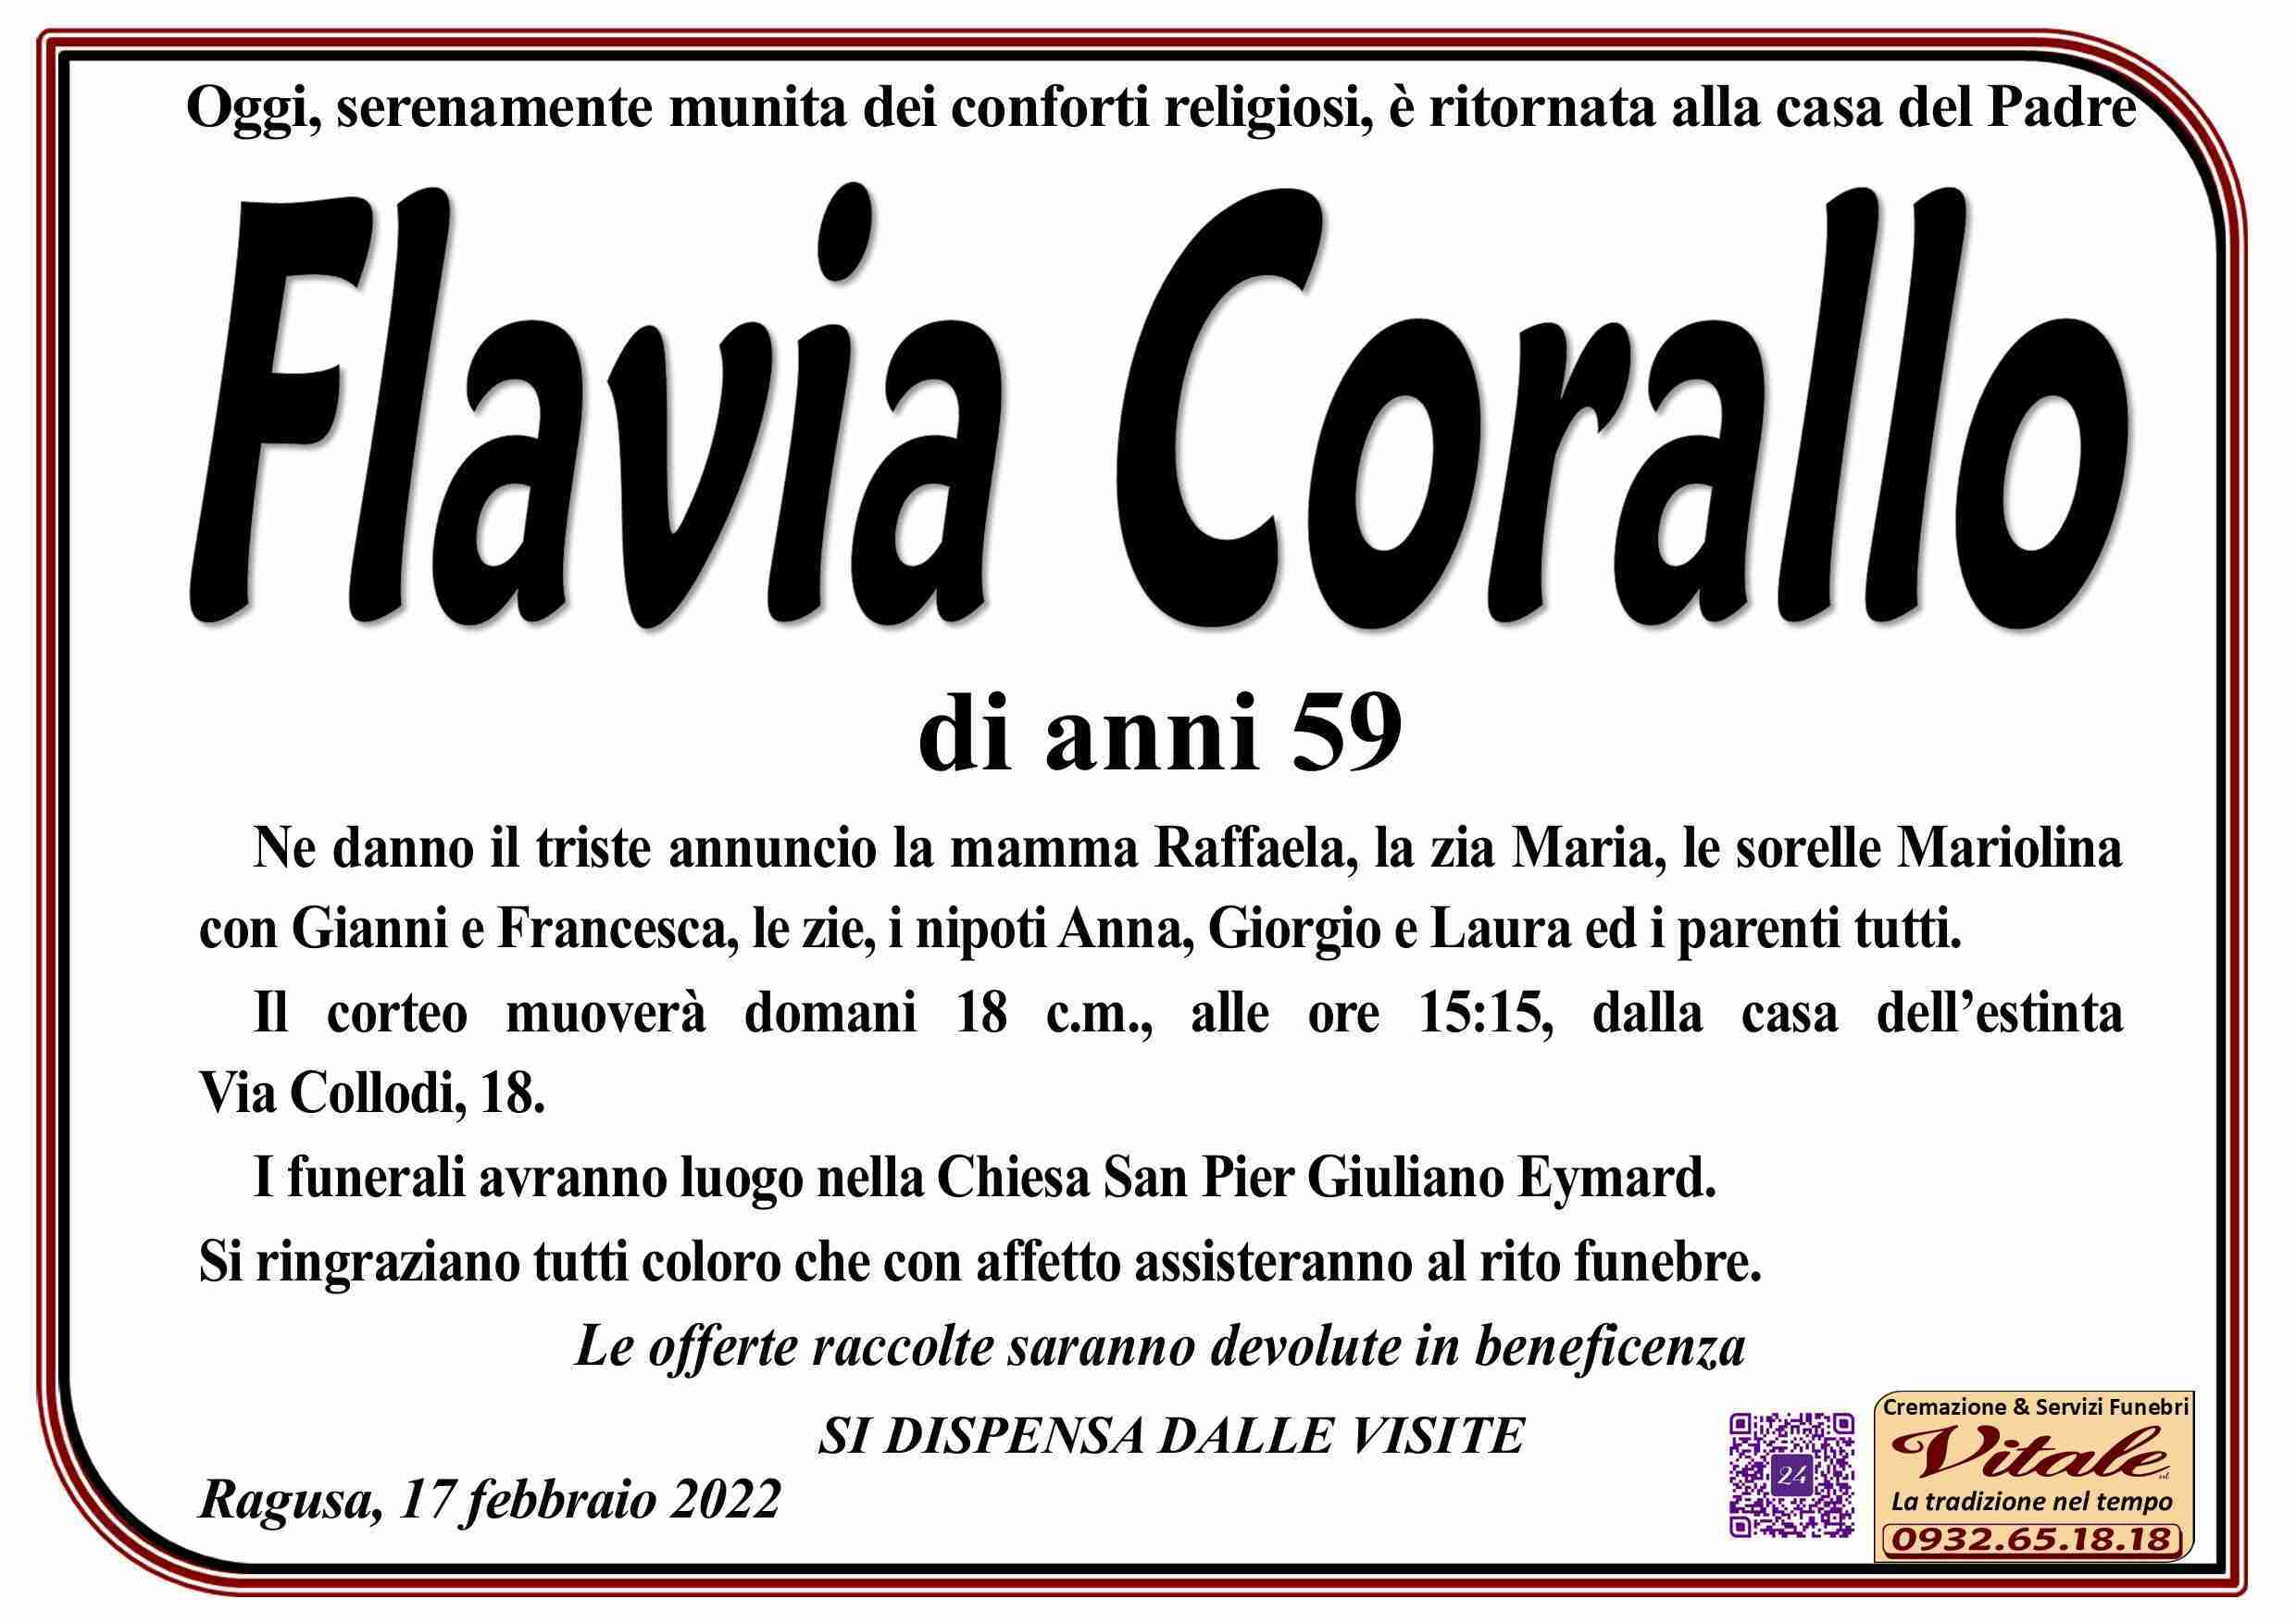 Flavia Corallo